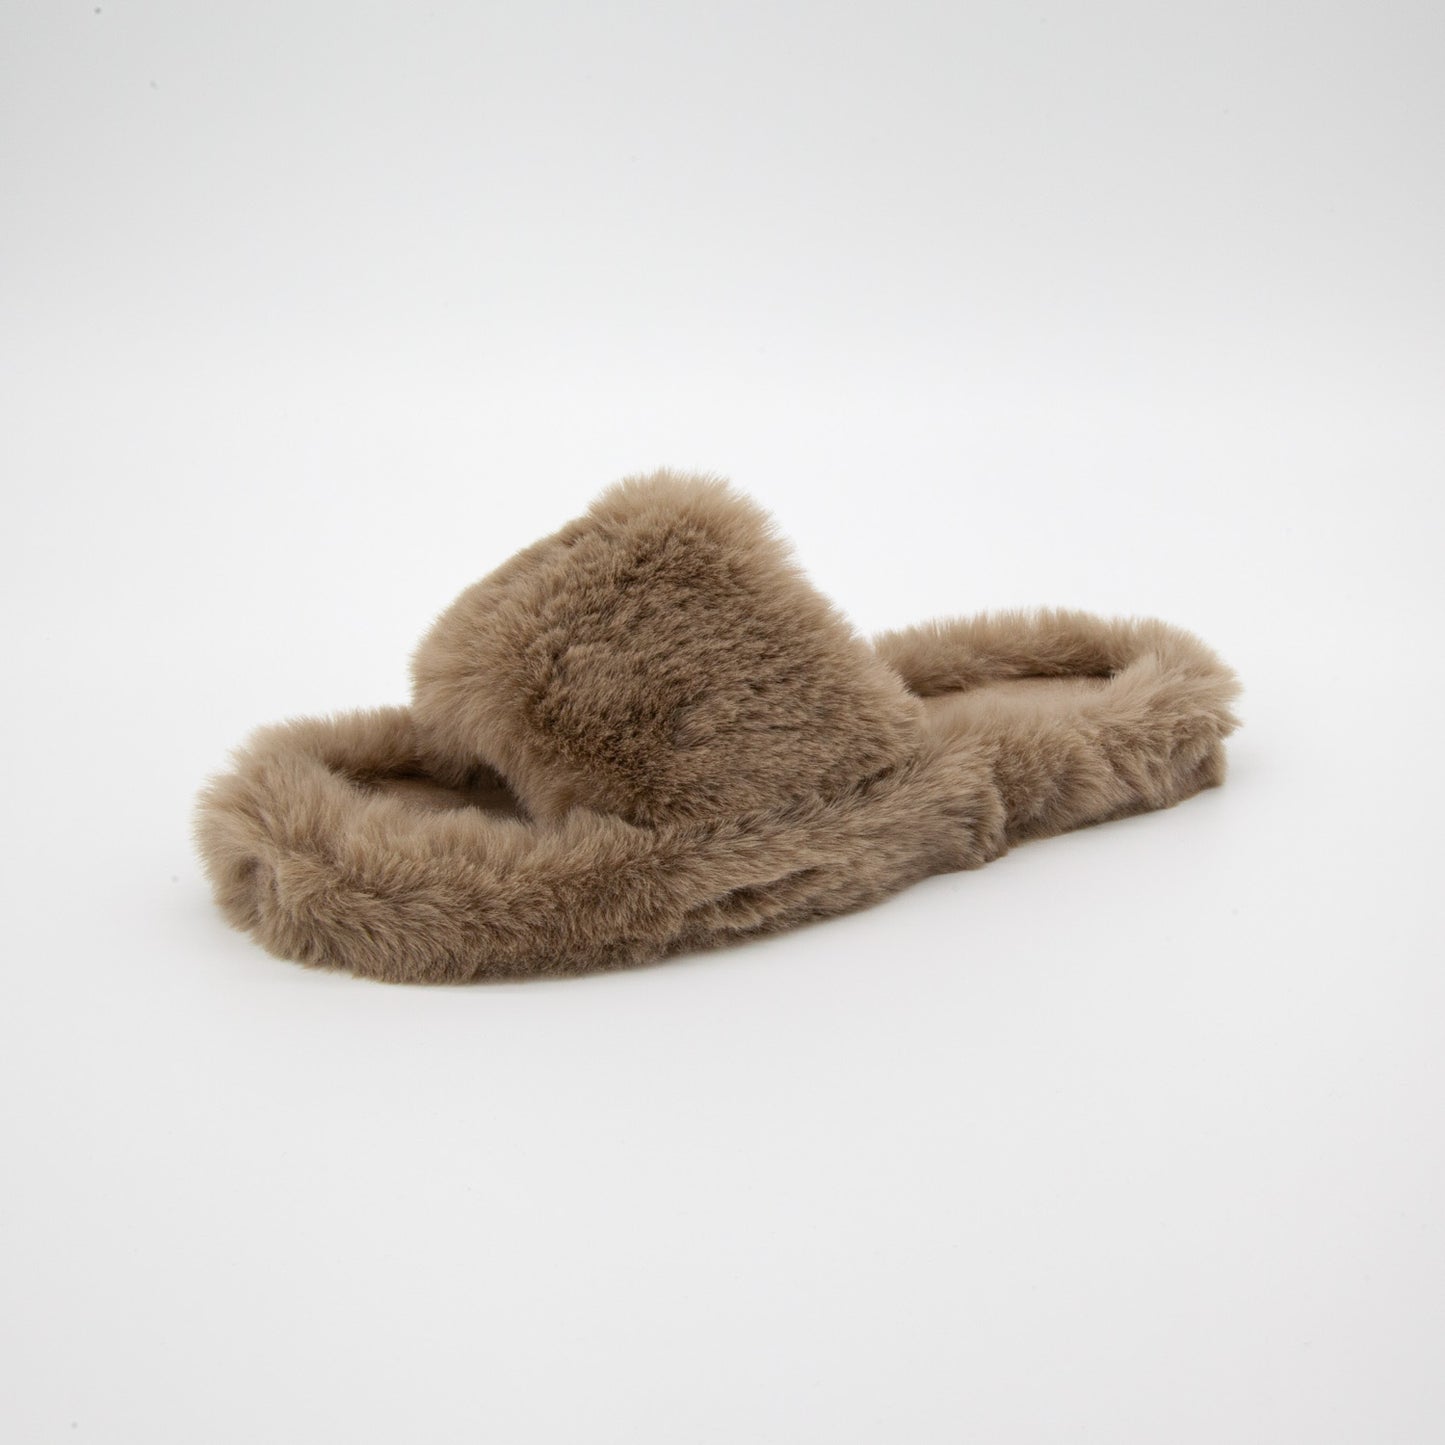 Fluffy Slippers in Khaki